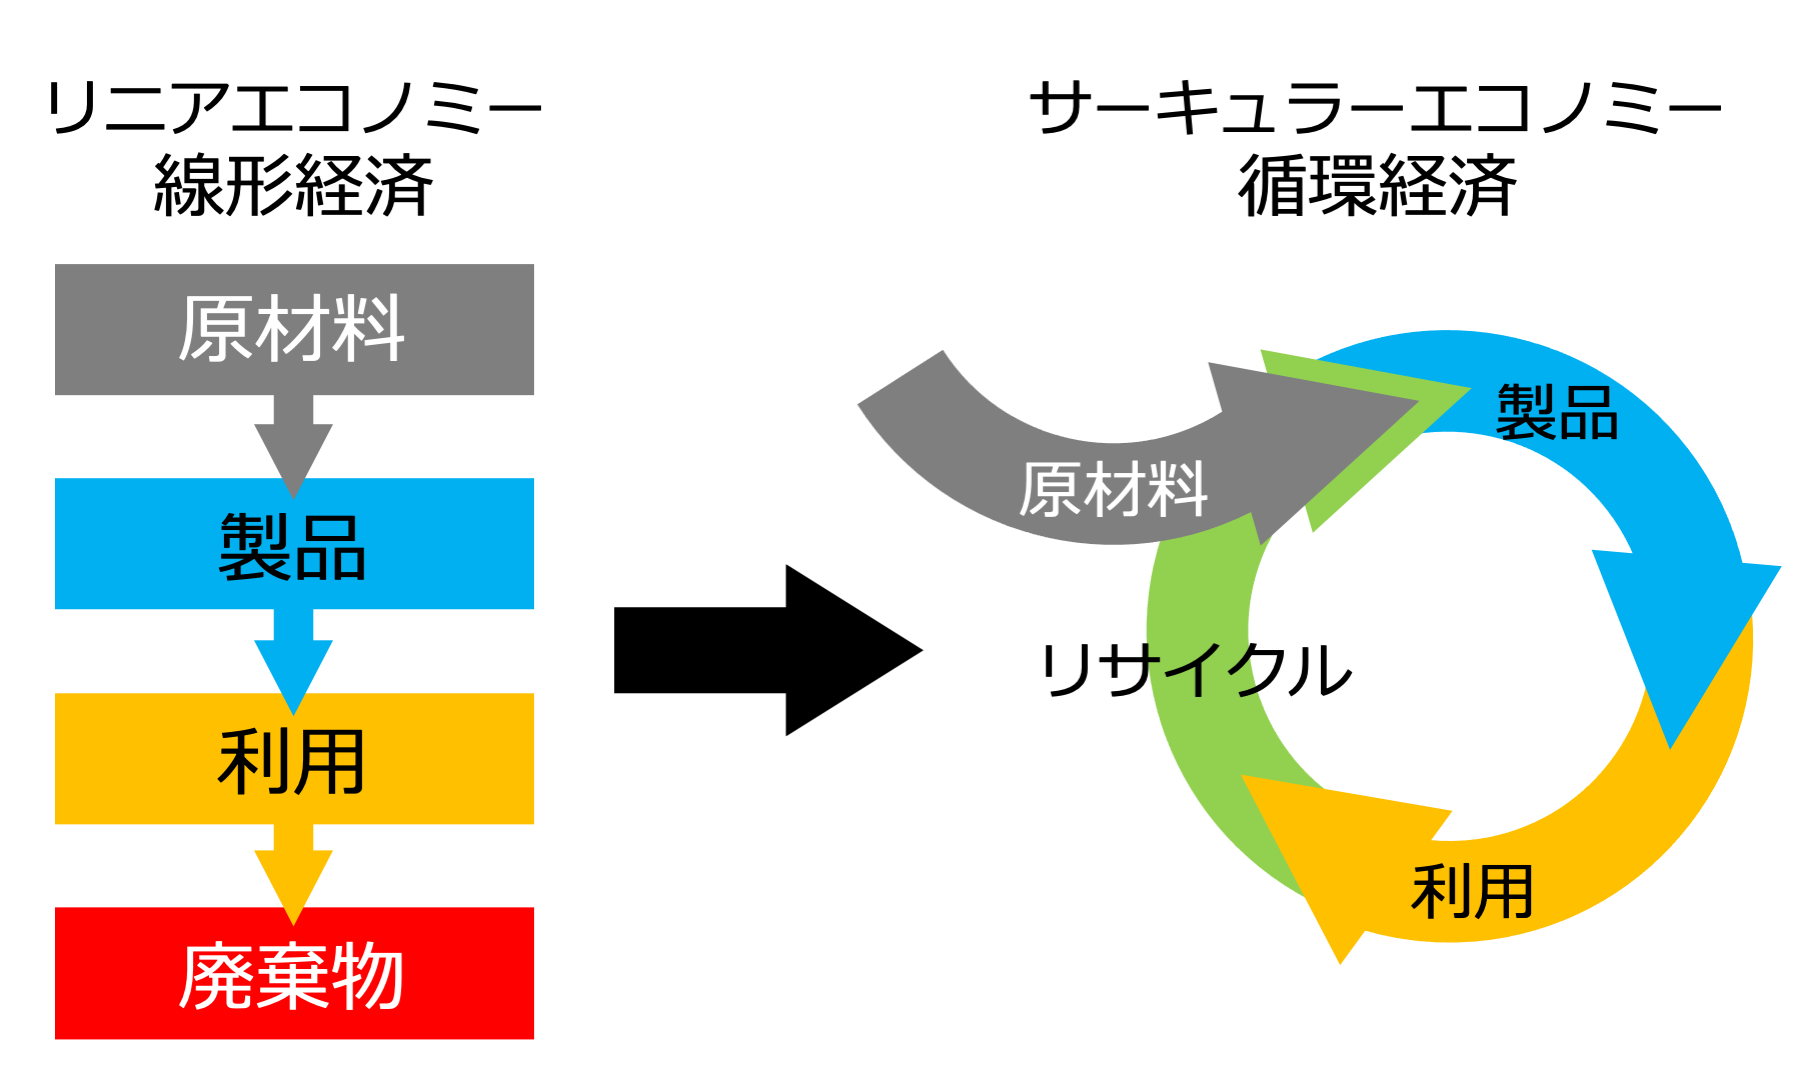 CE_Diagram